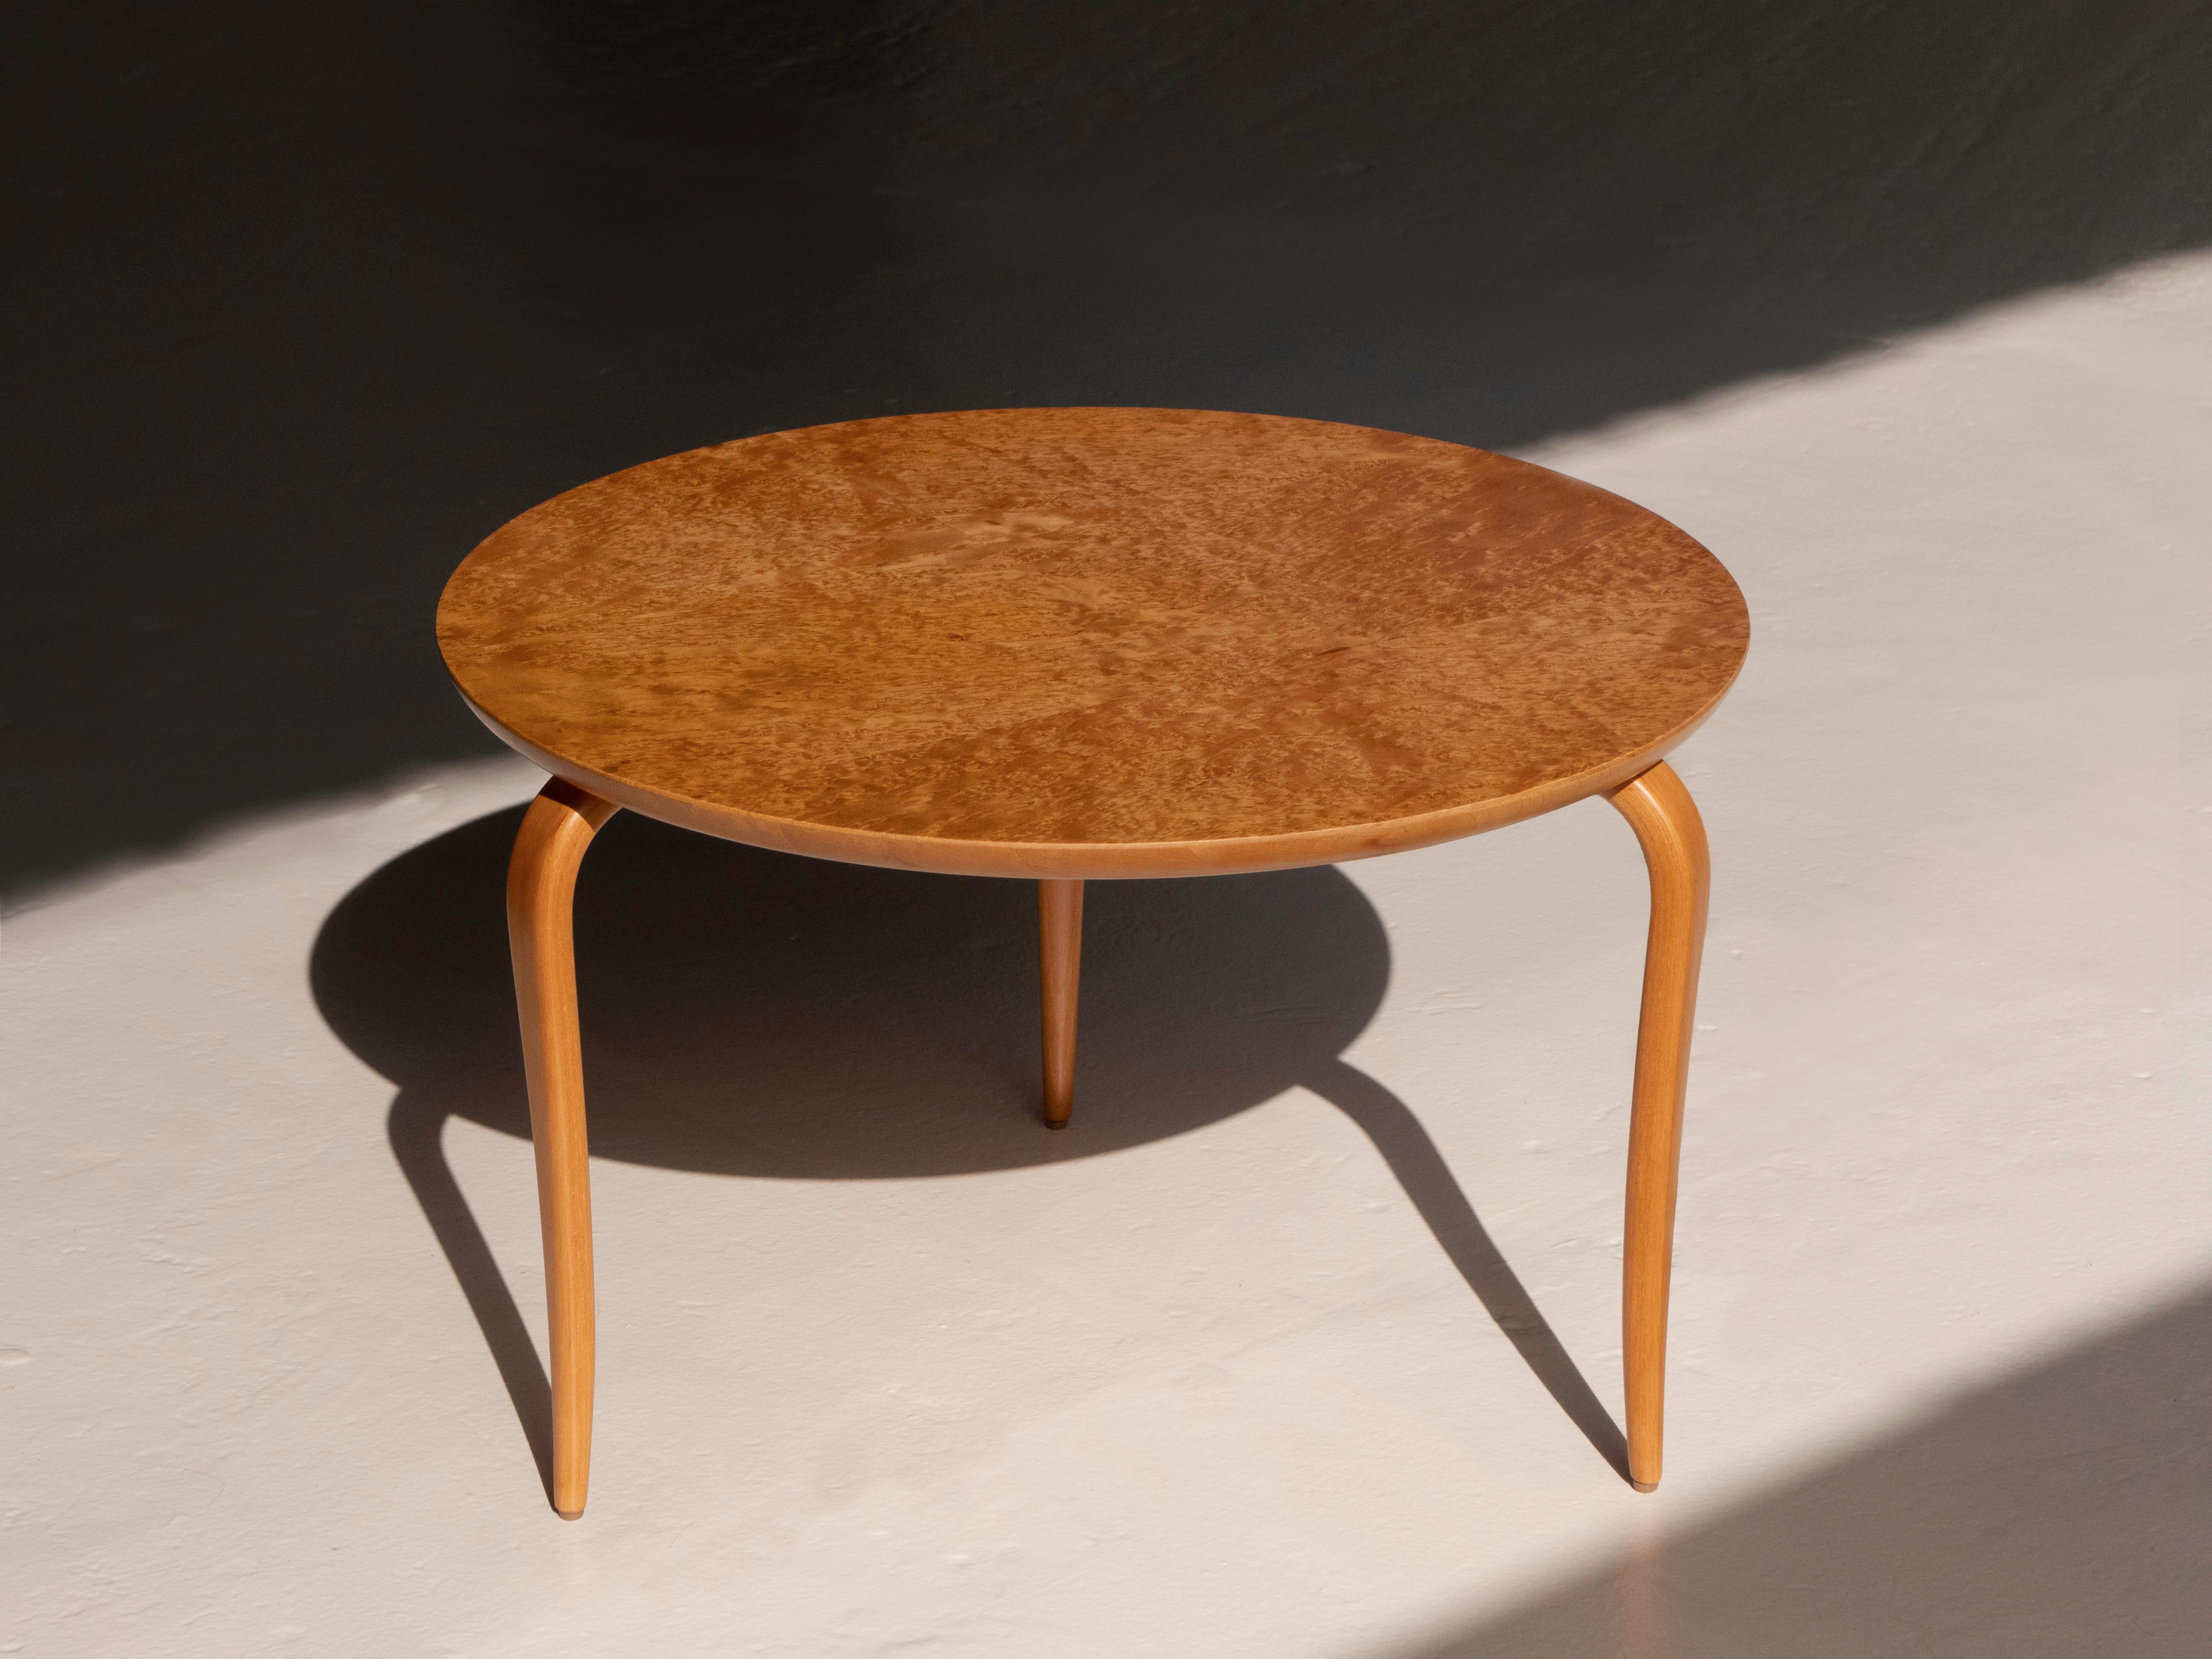 Bruno Mathsson 'Annika' Cockailtisch / Beistelltisch. Er verfügt über konische Beine aus massivem Birkenholz und eine Platte aus Wurzelholz. Der Tisch wurde von Dux, Schweden, ca. 1960er Jahre hergestellt. Der Tisch ist in ausgezeichnetem Zustand